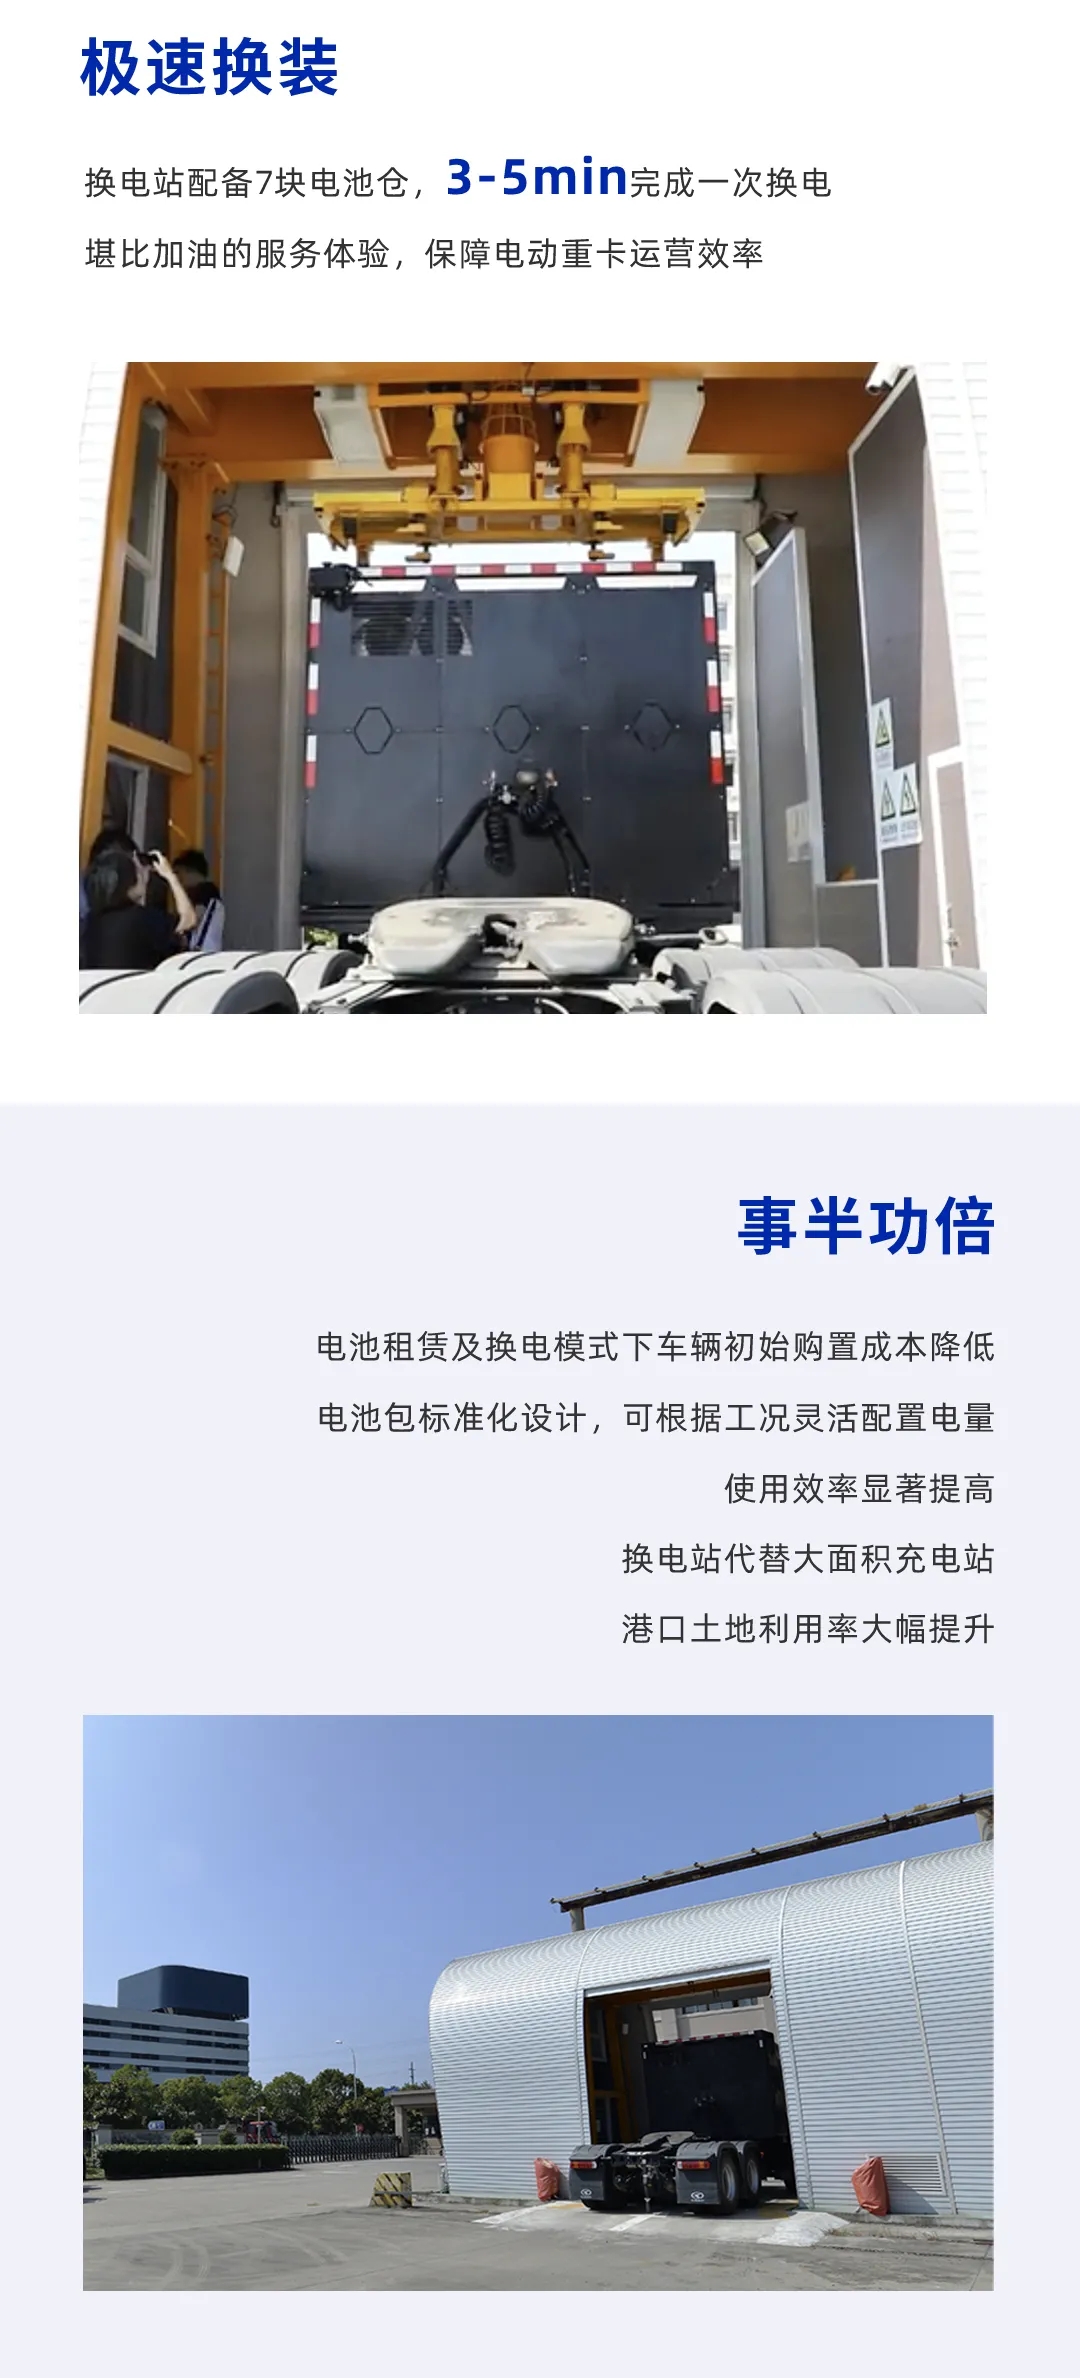 近期，搭载宁德时代电池系统的上海首批华菱换电重卡交付临港新城，该项目由上海融合电科融资租赁有限公司实施。